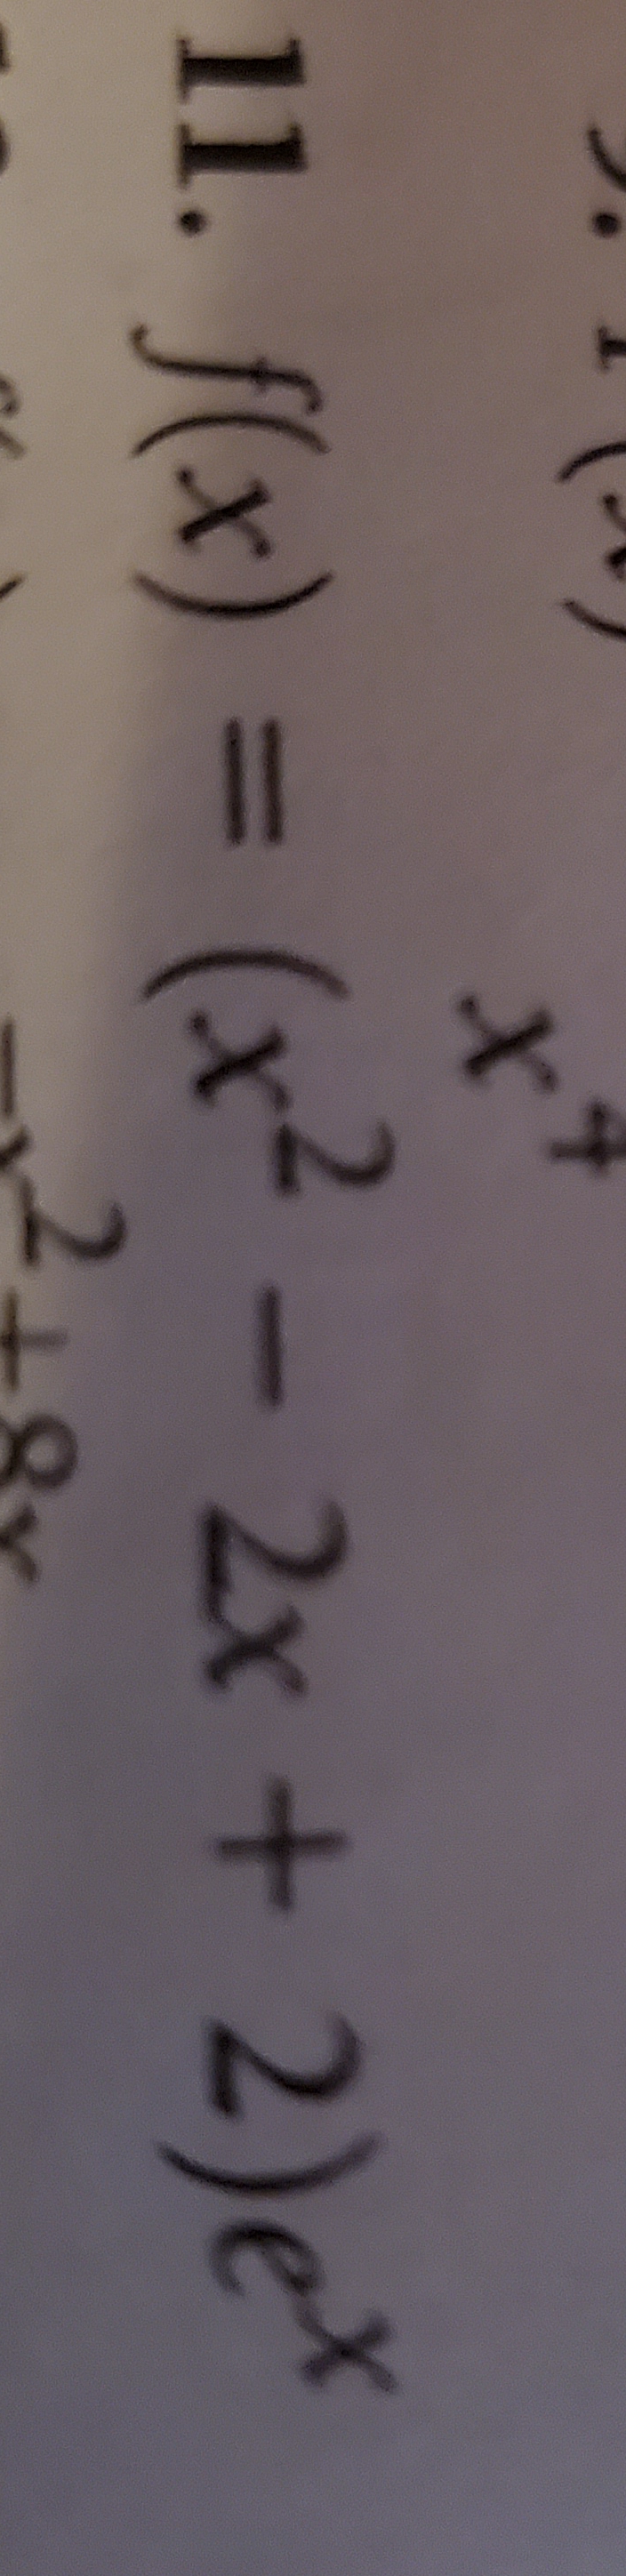 11. f(x) = (x2- 2x+ 2)e
4
+
